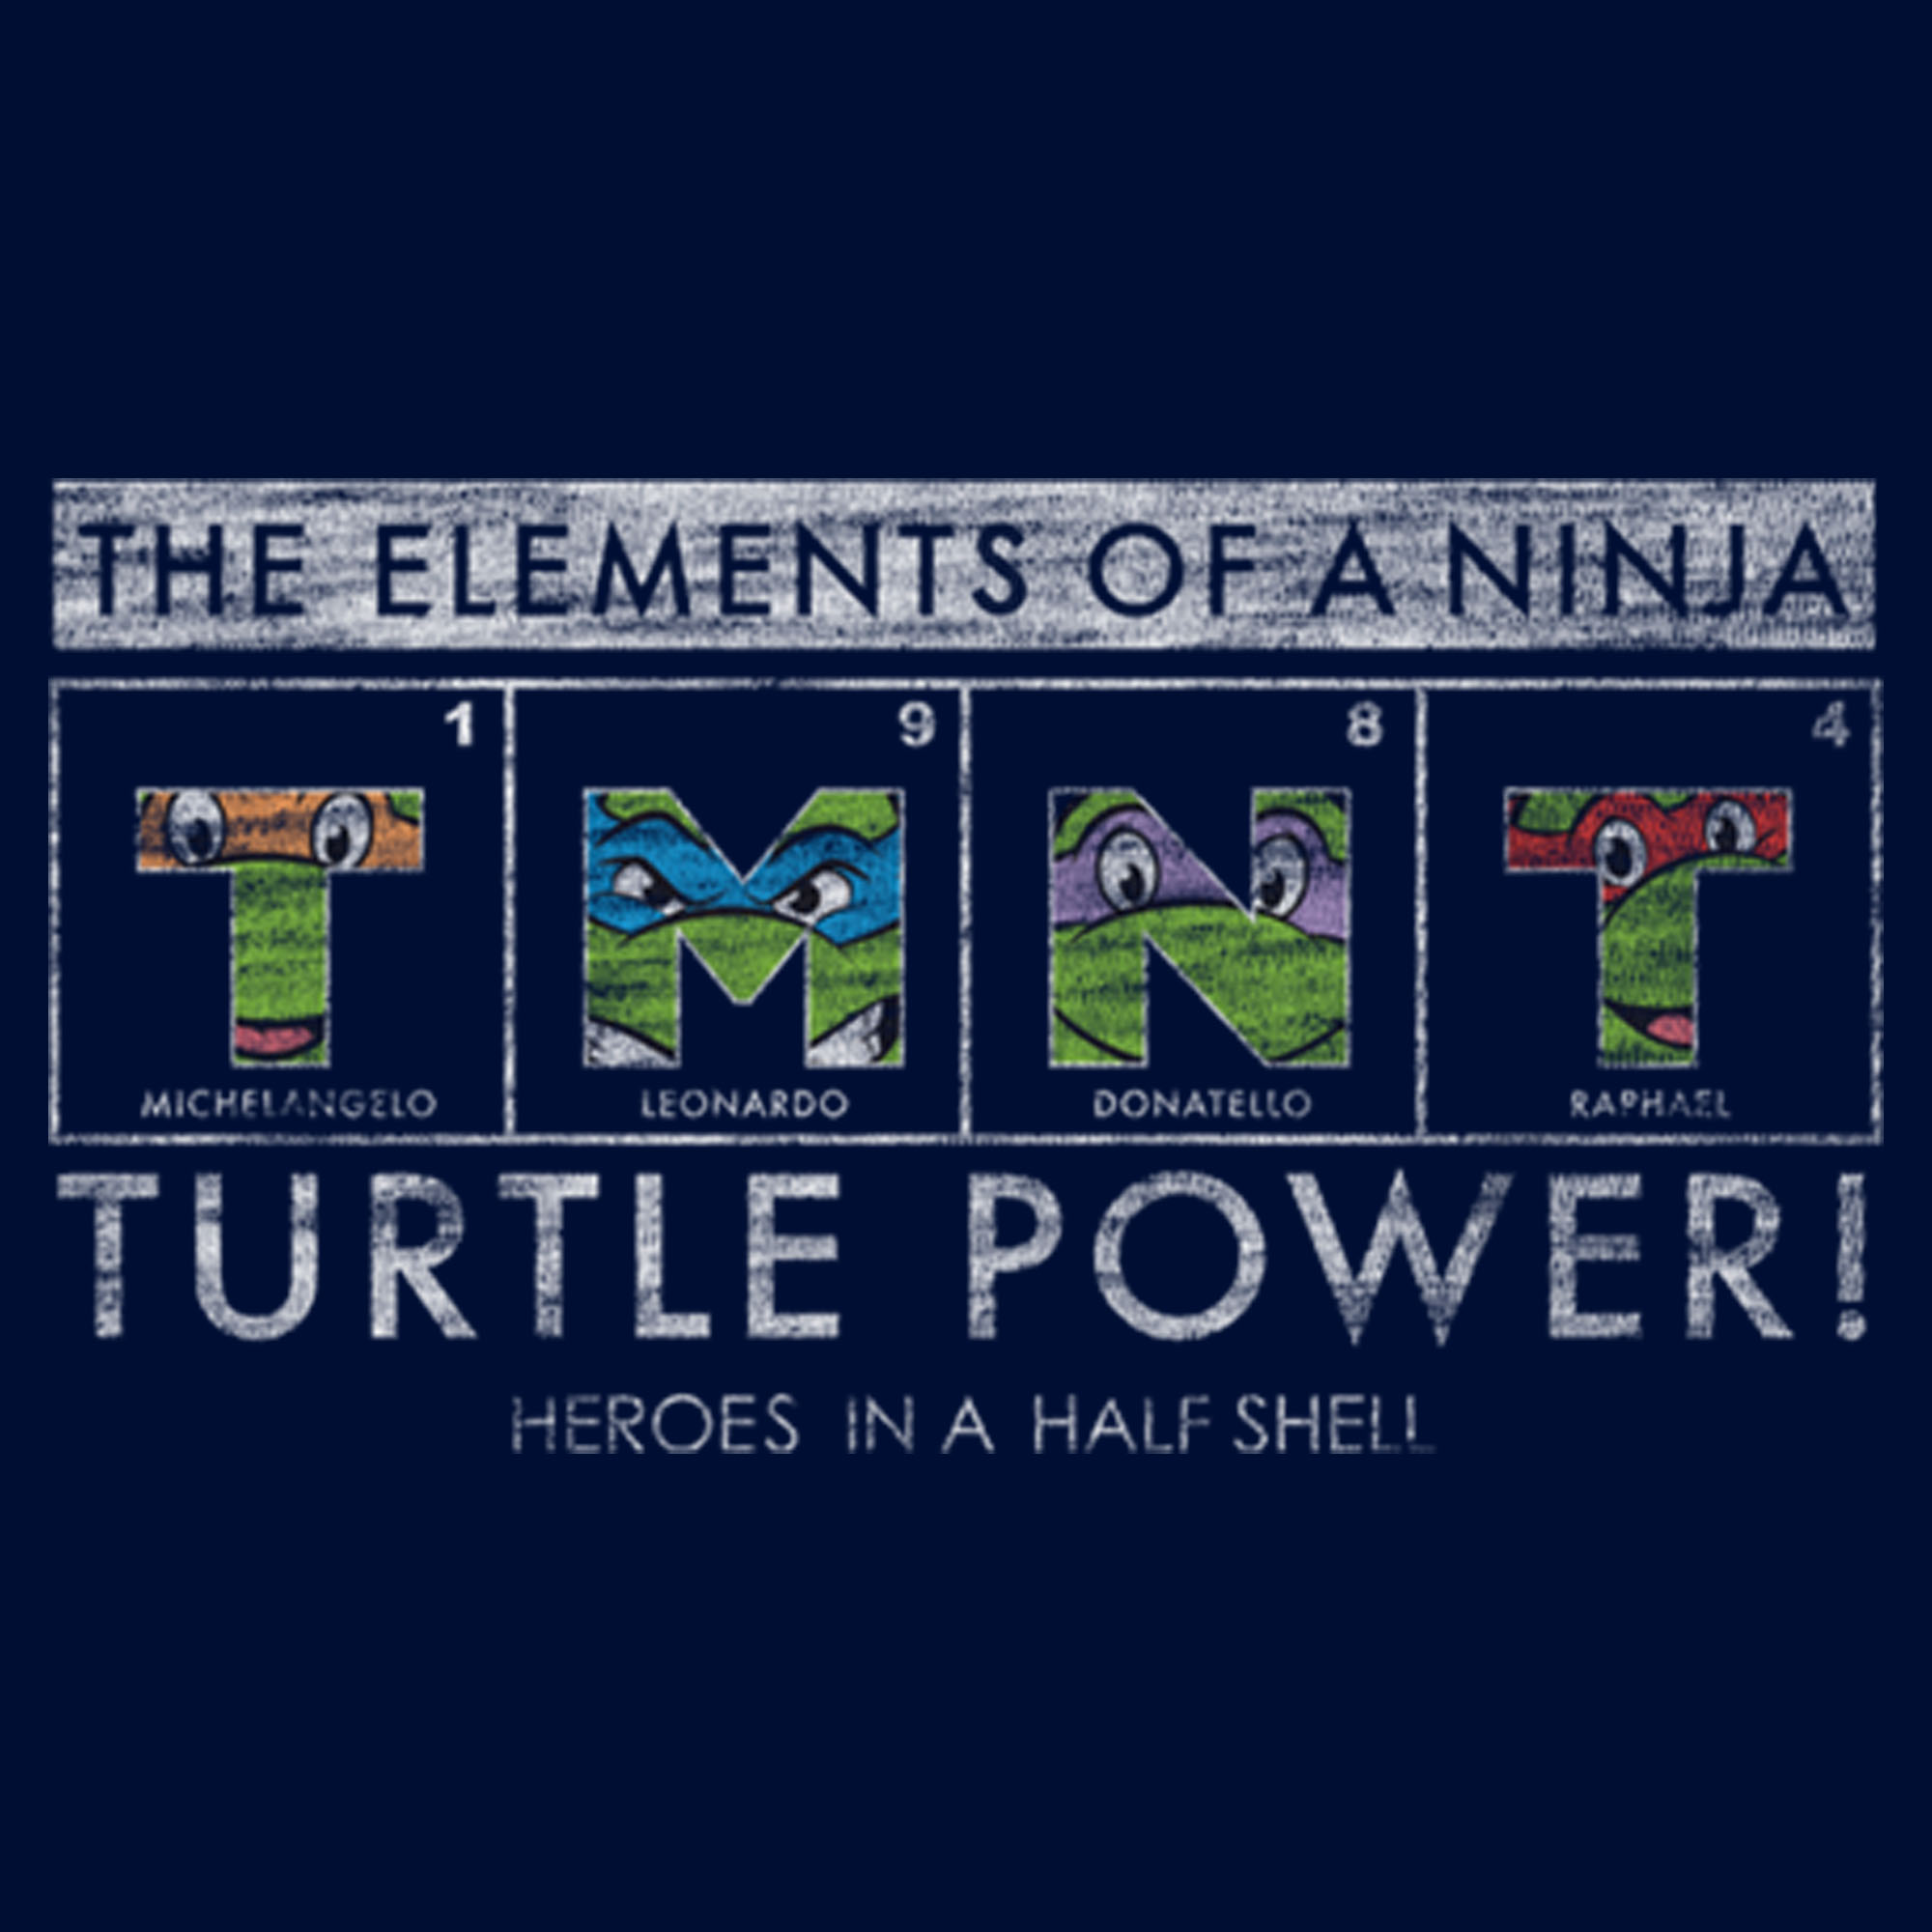 Teenage Mutant Ninja Turtles Boy's Teenage Mutant Ninja Turtles Distressed The Elements of a Ninja  Graphic T-Shirt